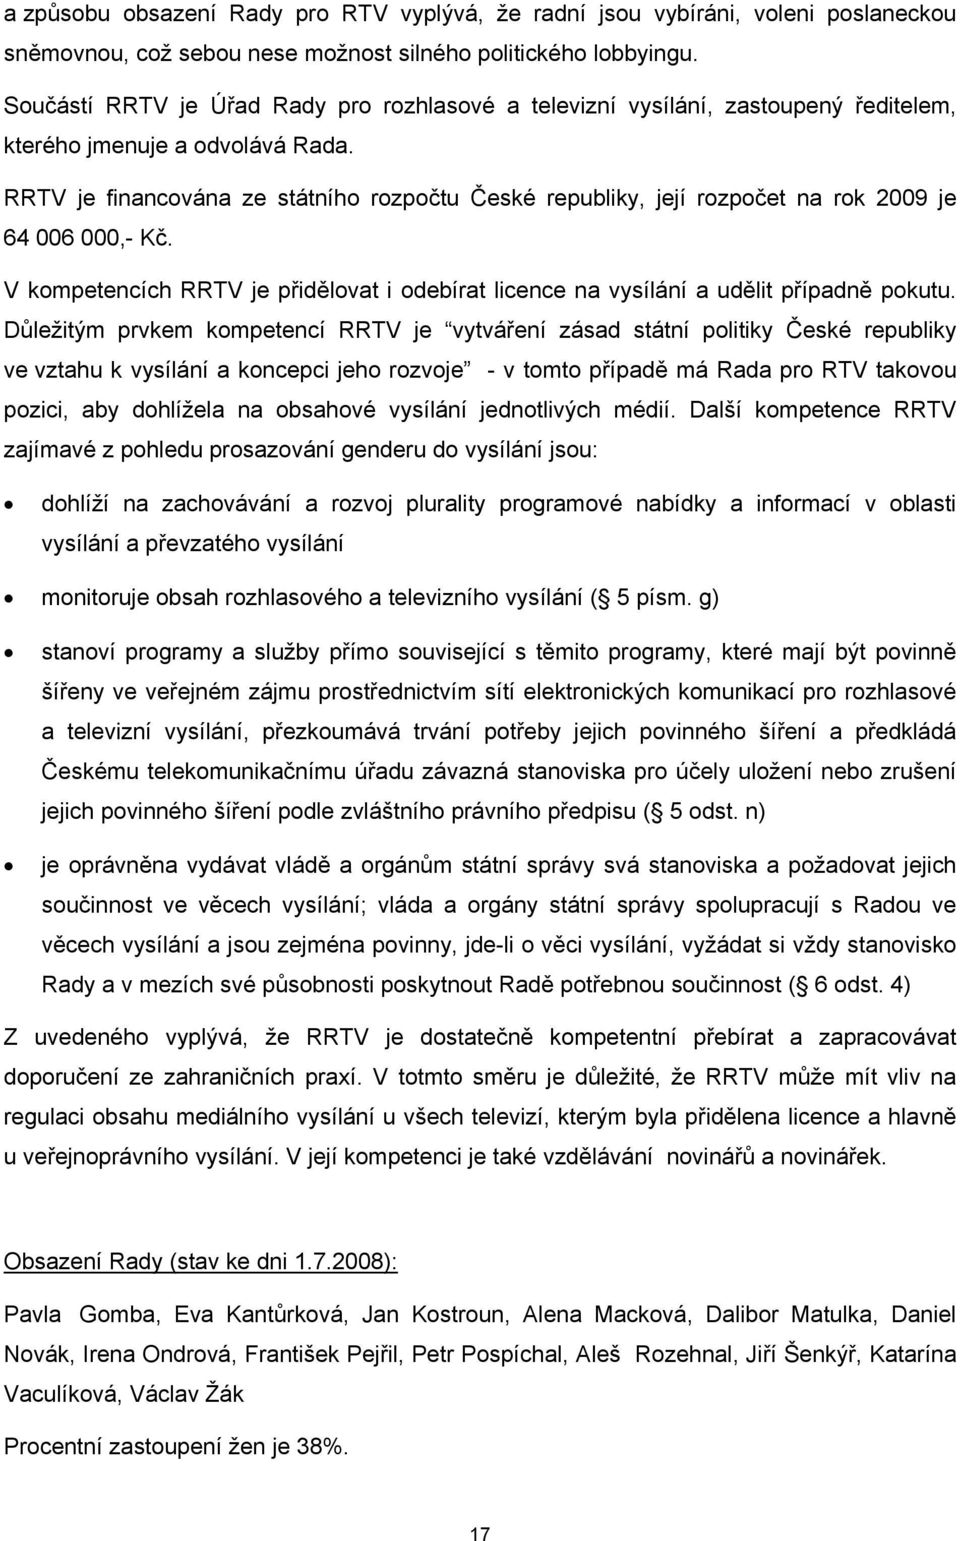 RRTV je financována ze státního rozpočtu České republiky, její rozpočet na rok 2009 je 64 006 000,- Kč. V kompetencích RRTV je přidělovat i odebírat licence na vysílání a udělit případně pokutu.